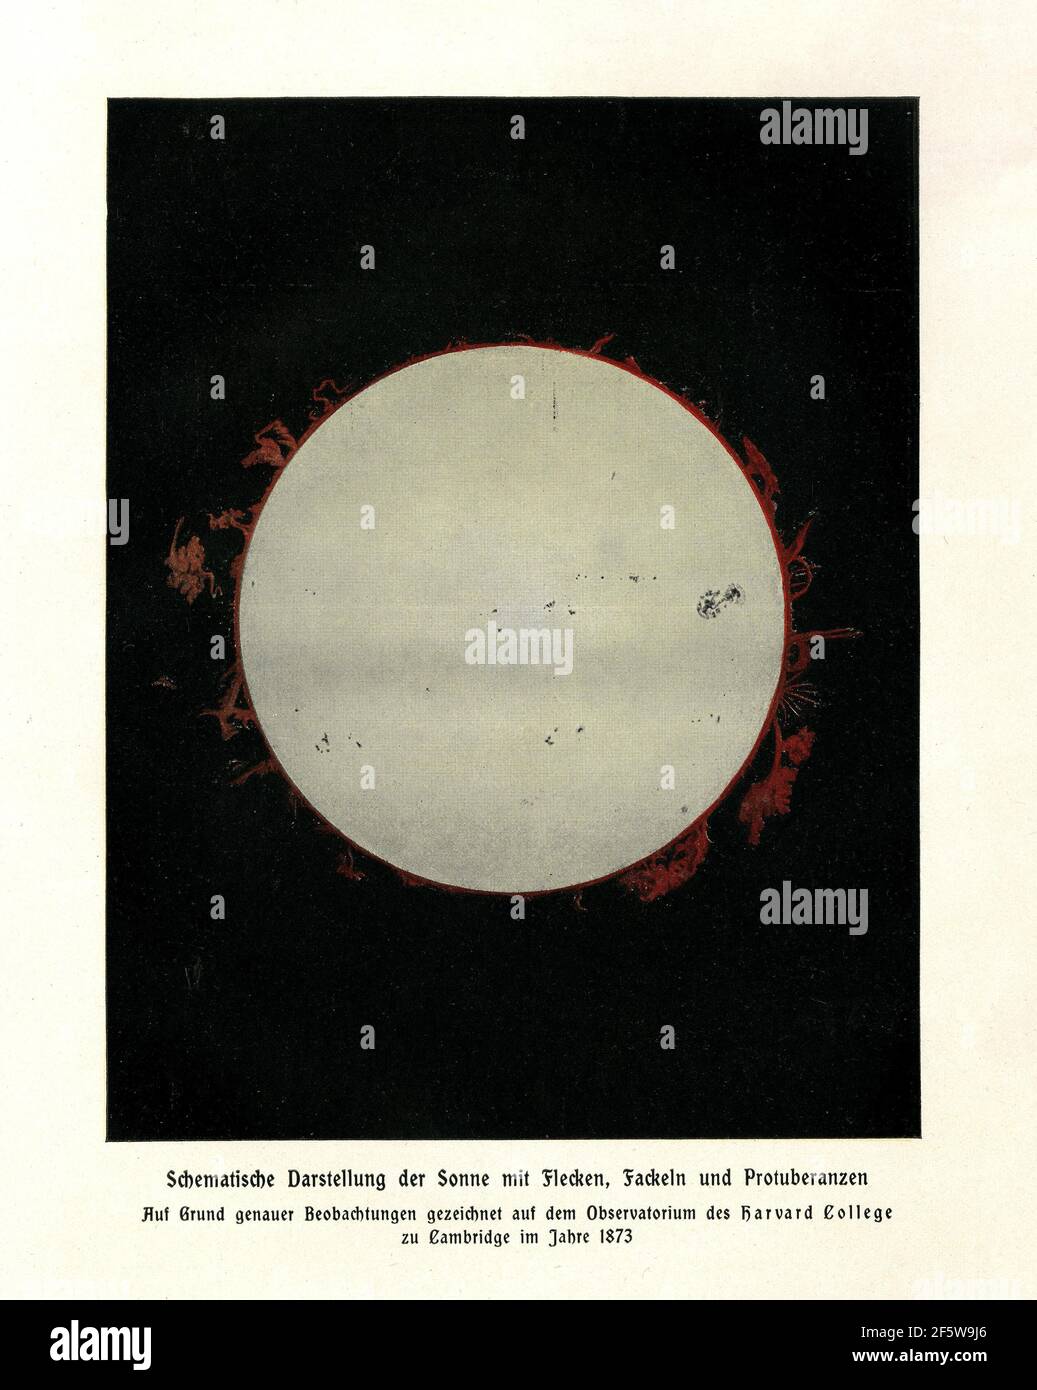 Rappresentazione schematica del sole con macchie, svasature e prominenze, disegnata sulla base di un'osservazione esatta presso l'osservatorio dell'Harvard College Foto Stock